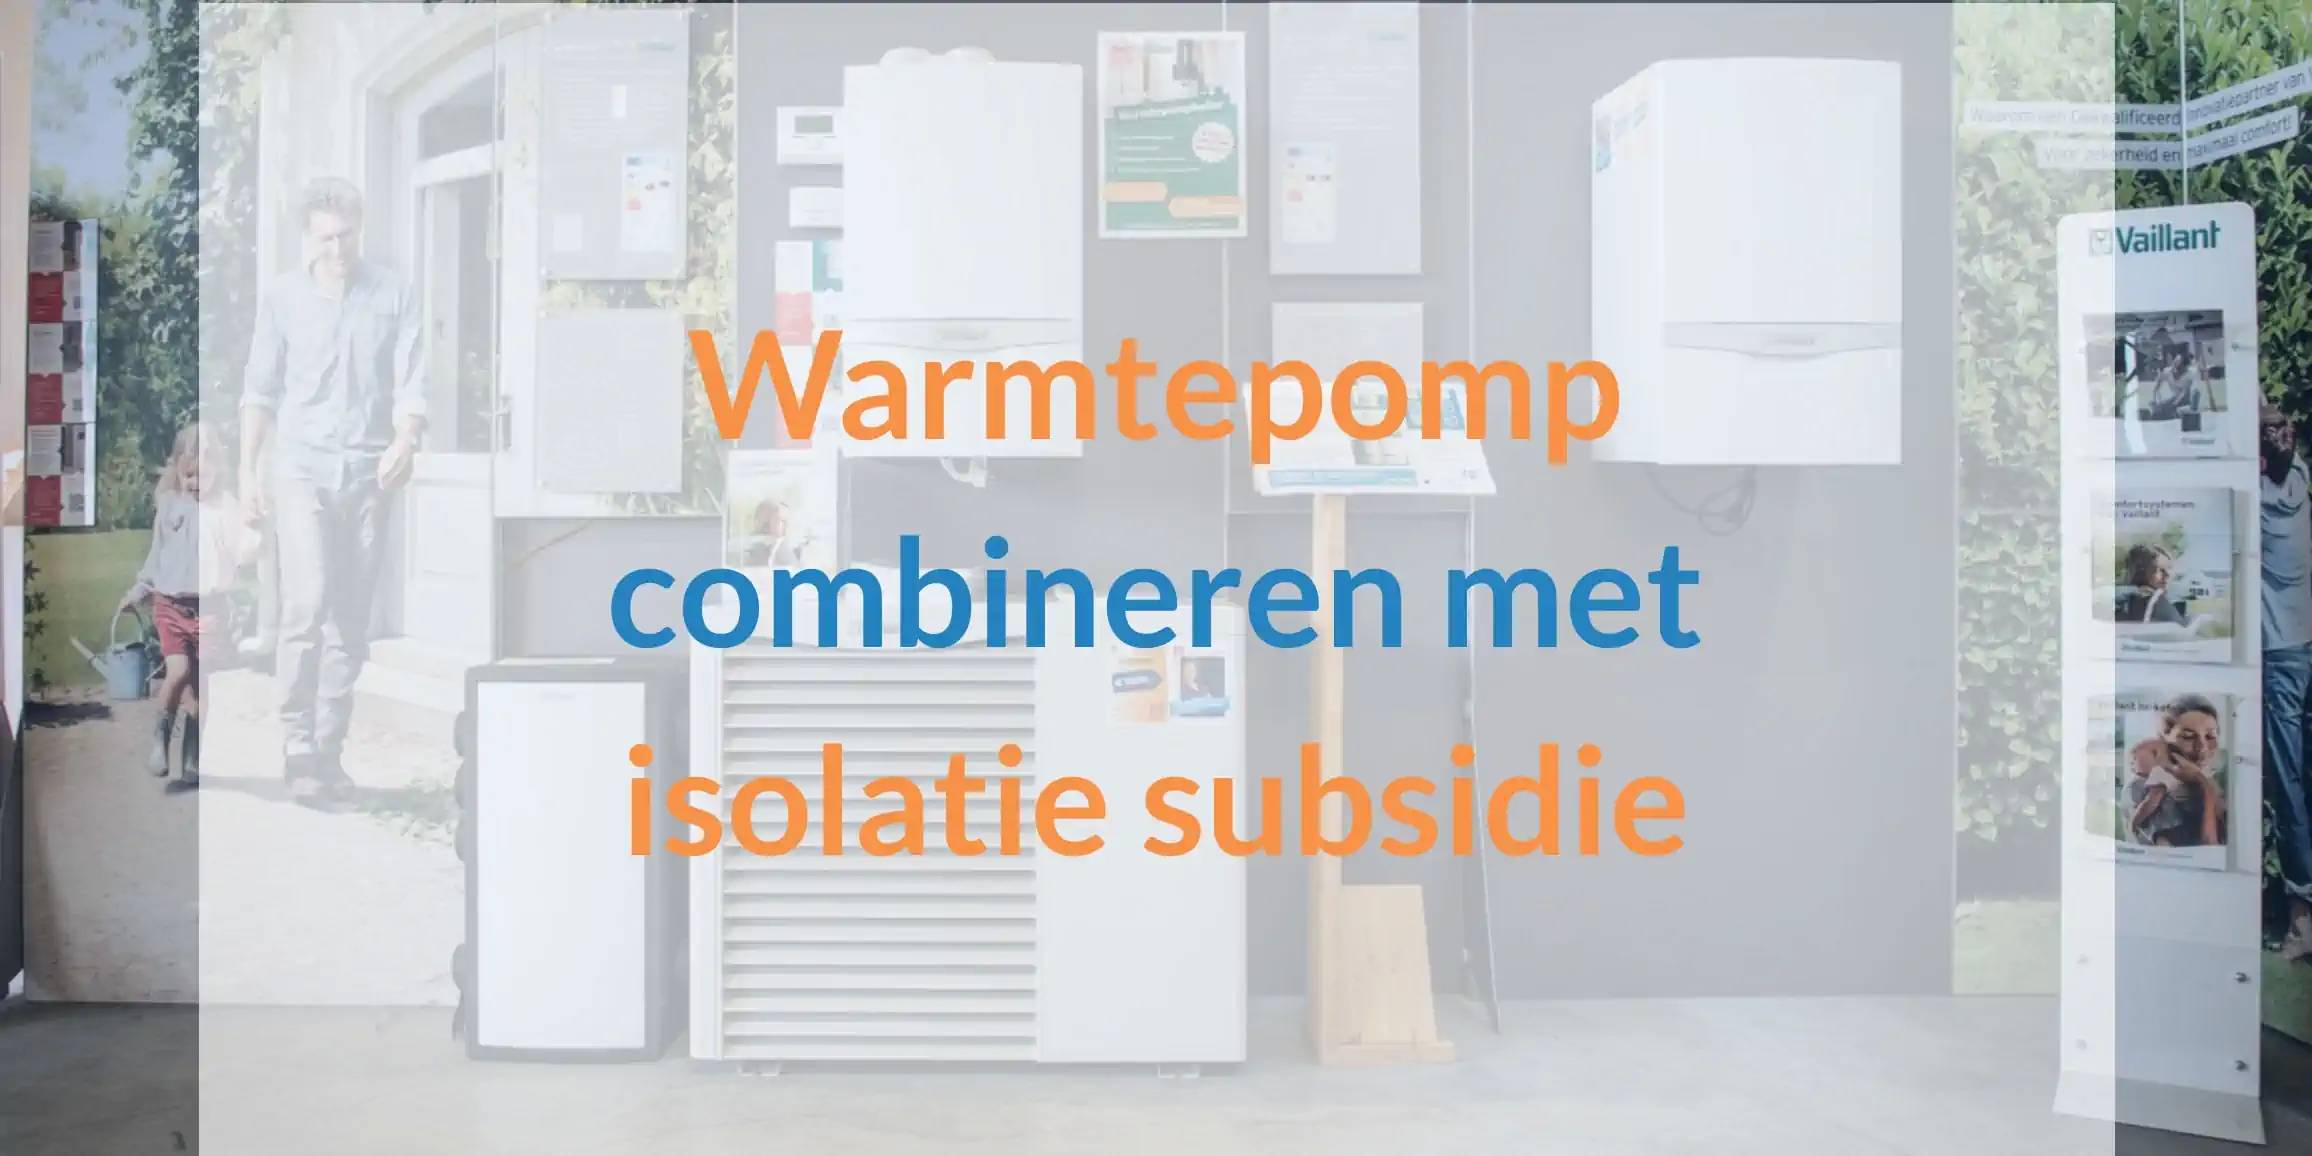 Warmtepomp combineren met isolatie voor subsidie